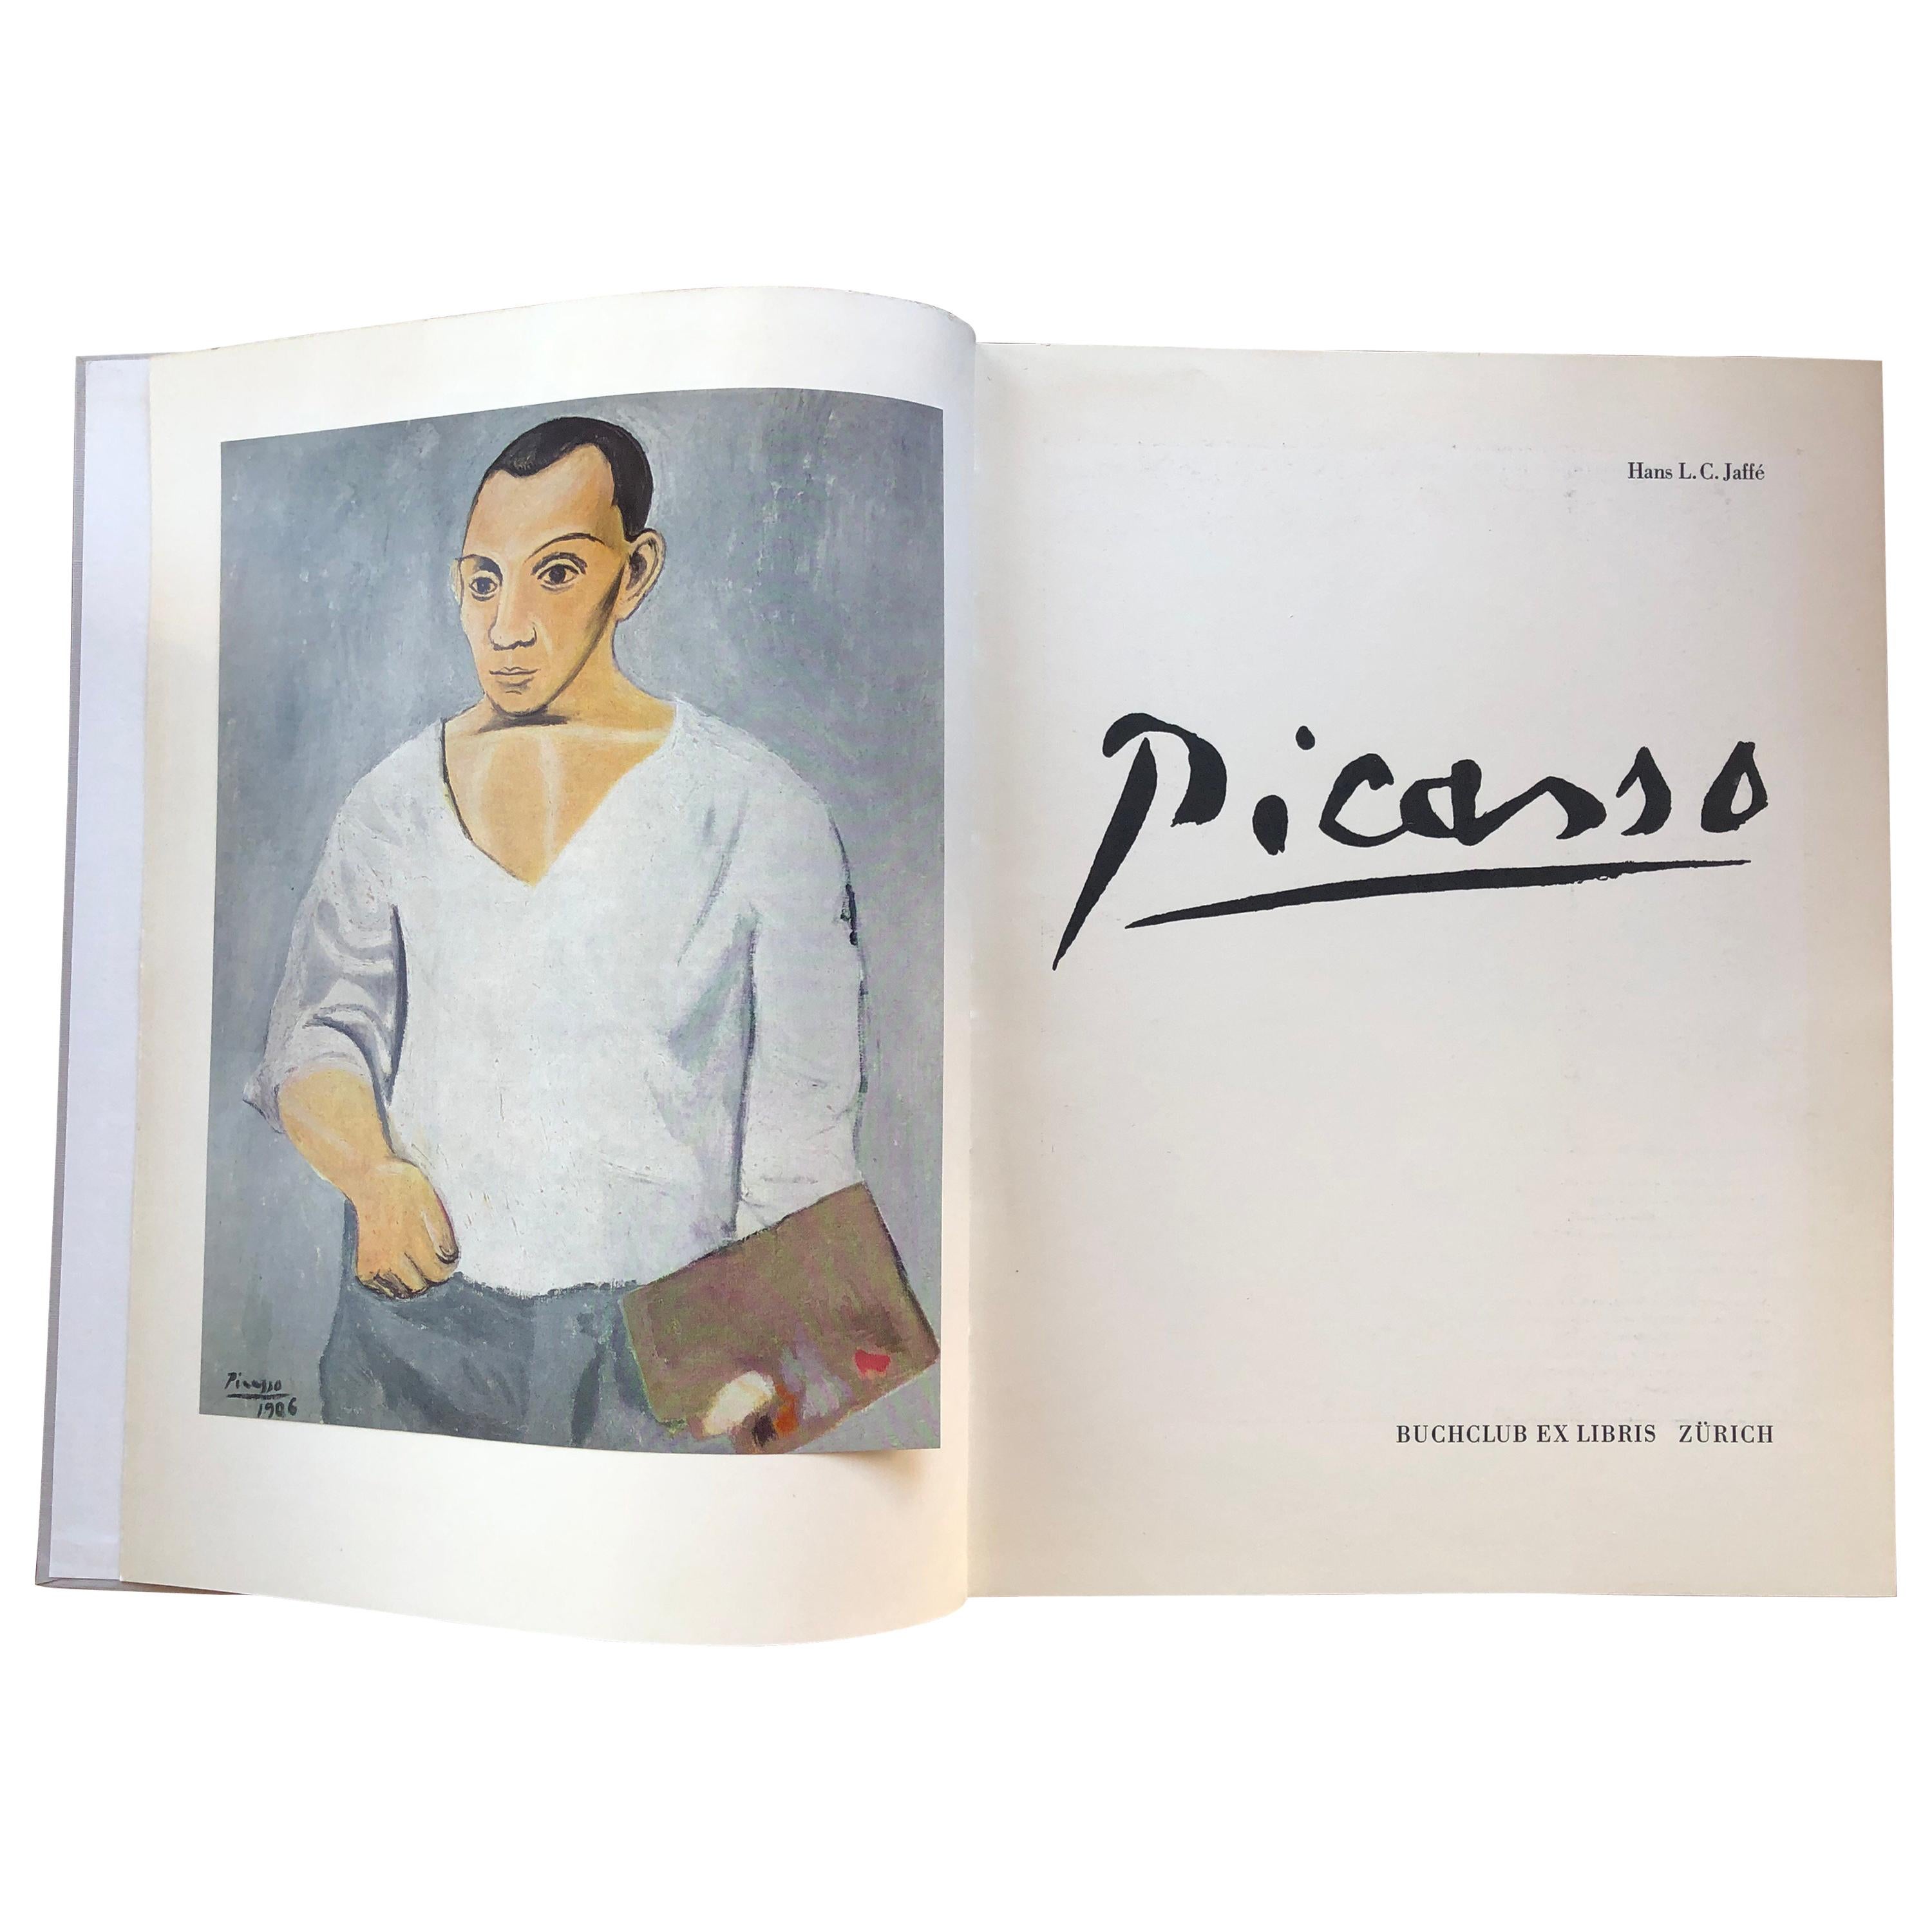 Picasso, Hans Jaffe, Buchclub Zurich, Droits Paris et Cosmopress, 1969